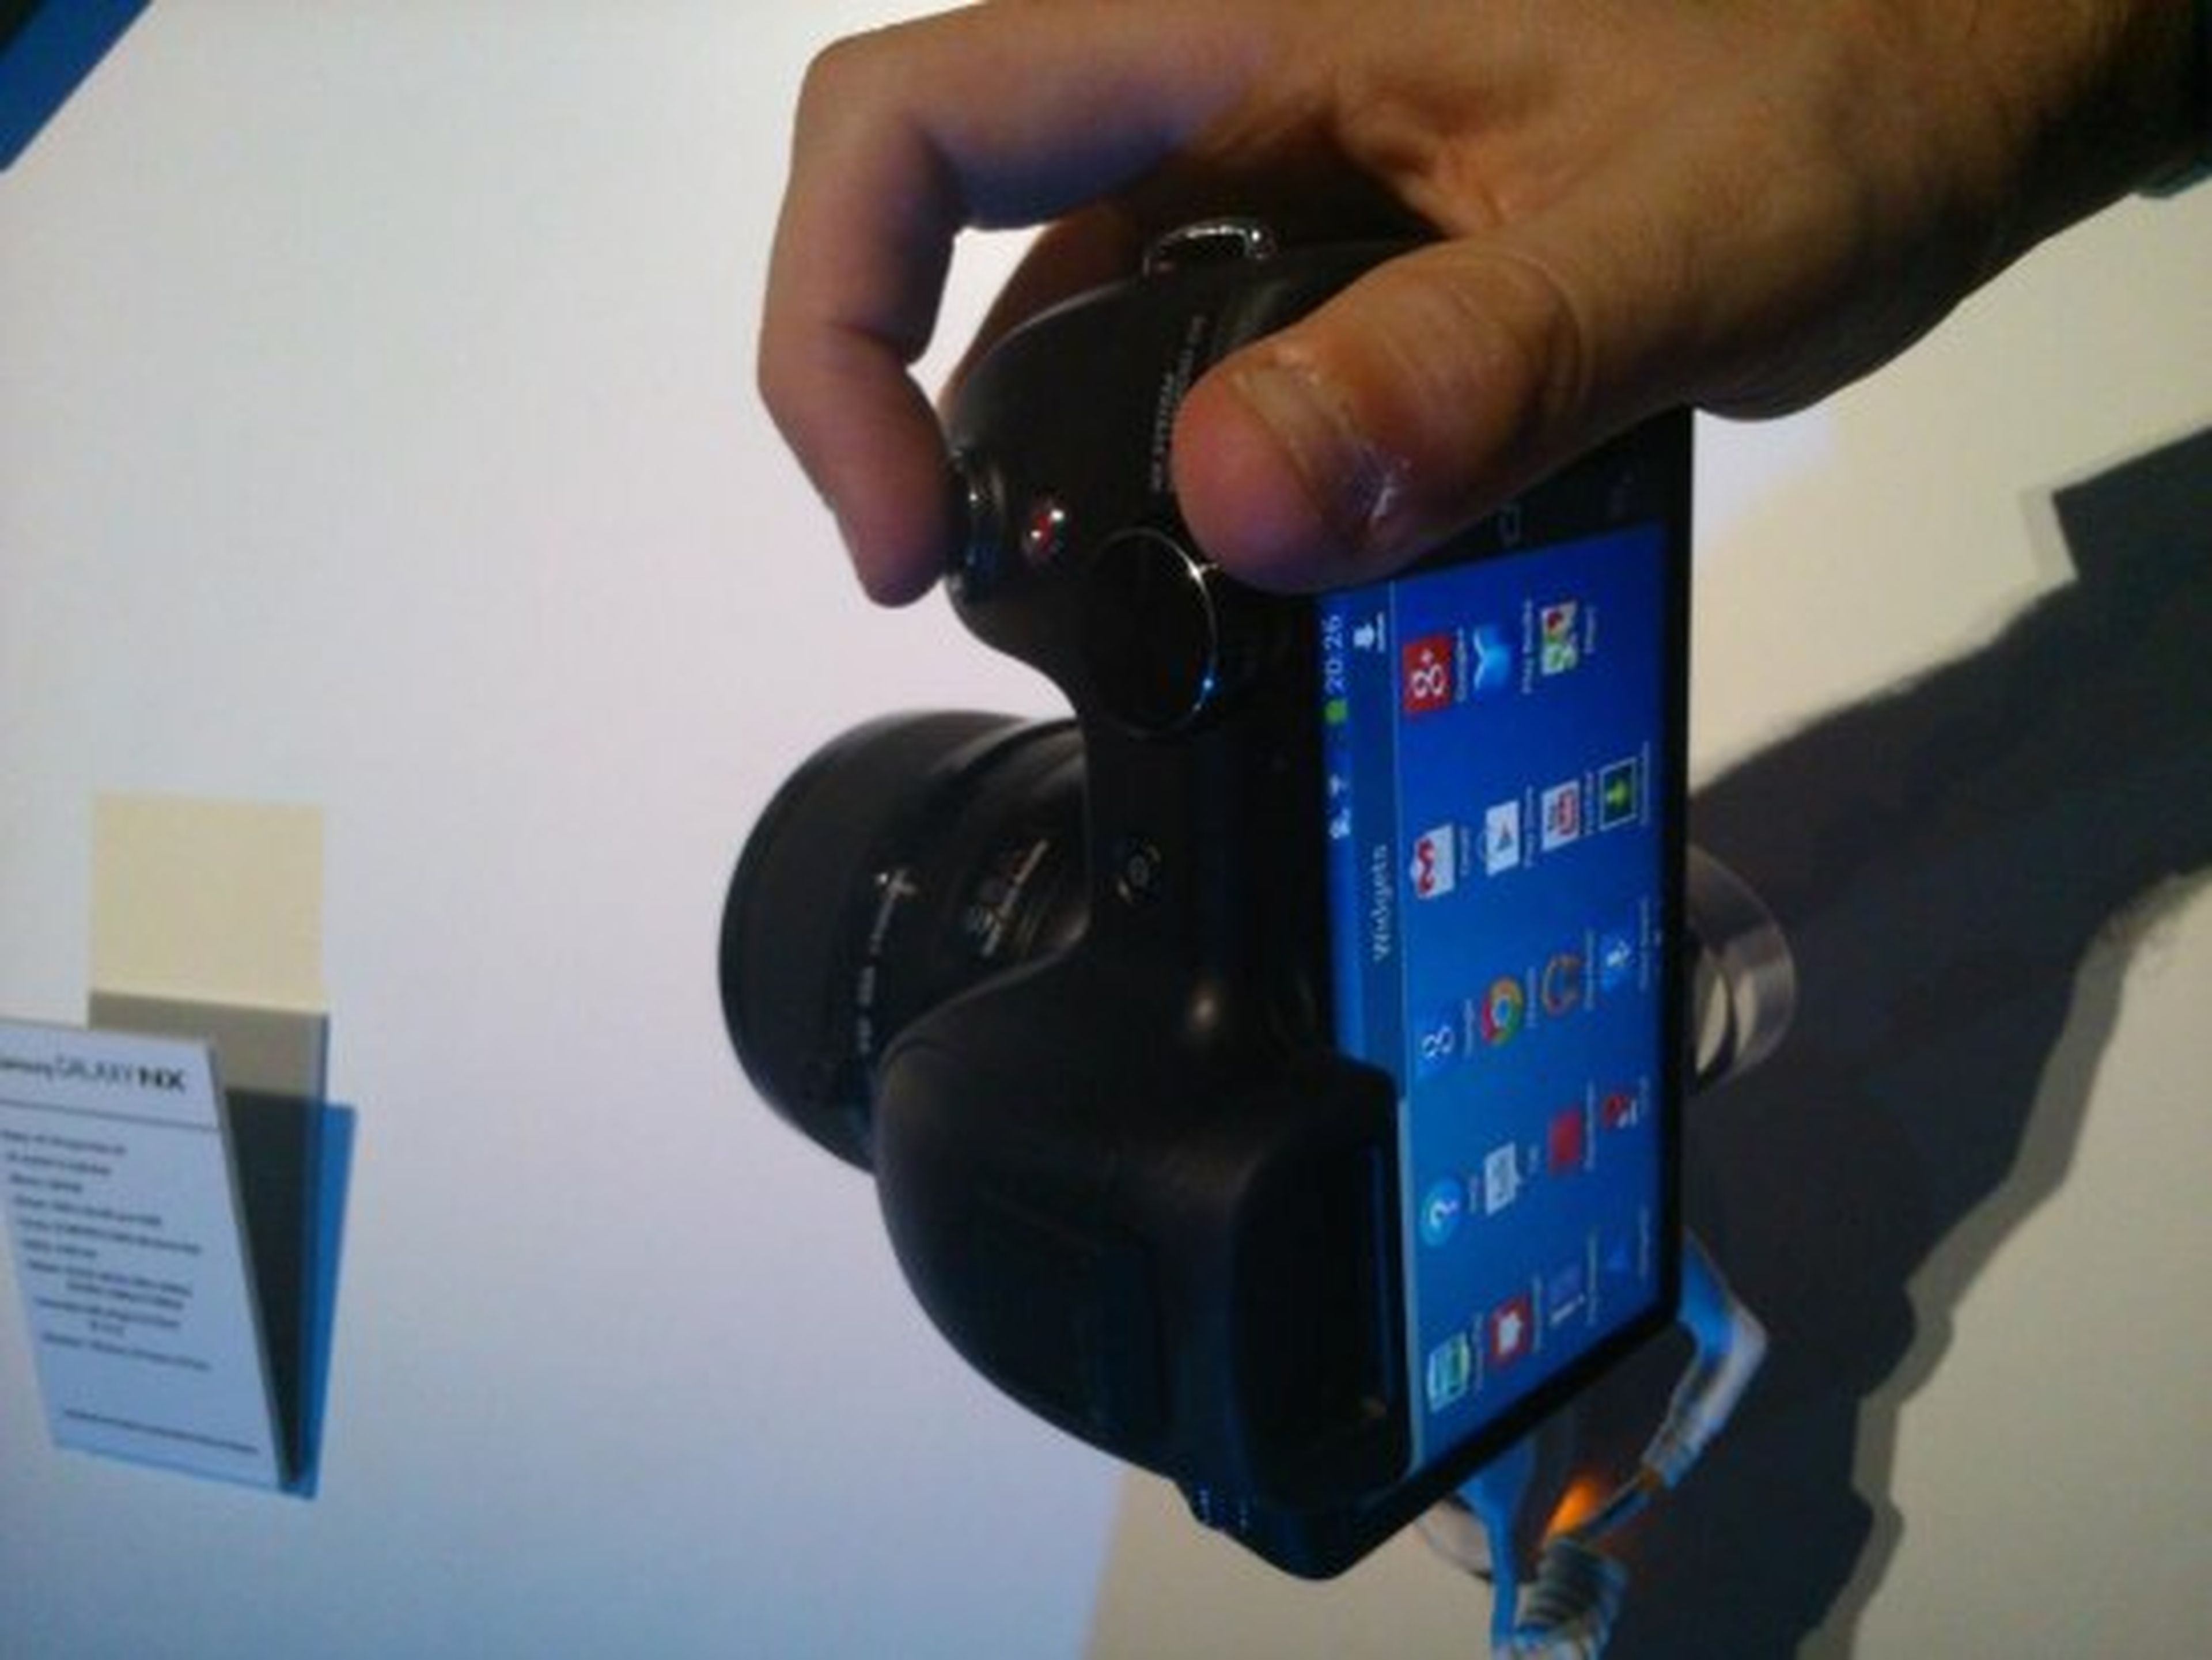 La cámara Galaxy NX, presentada en Samsung Premiere